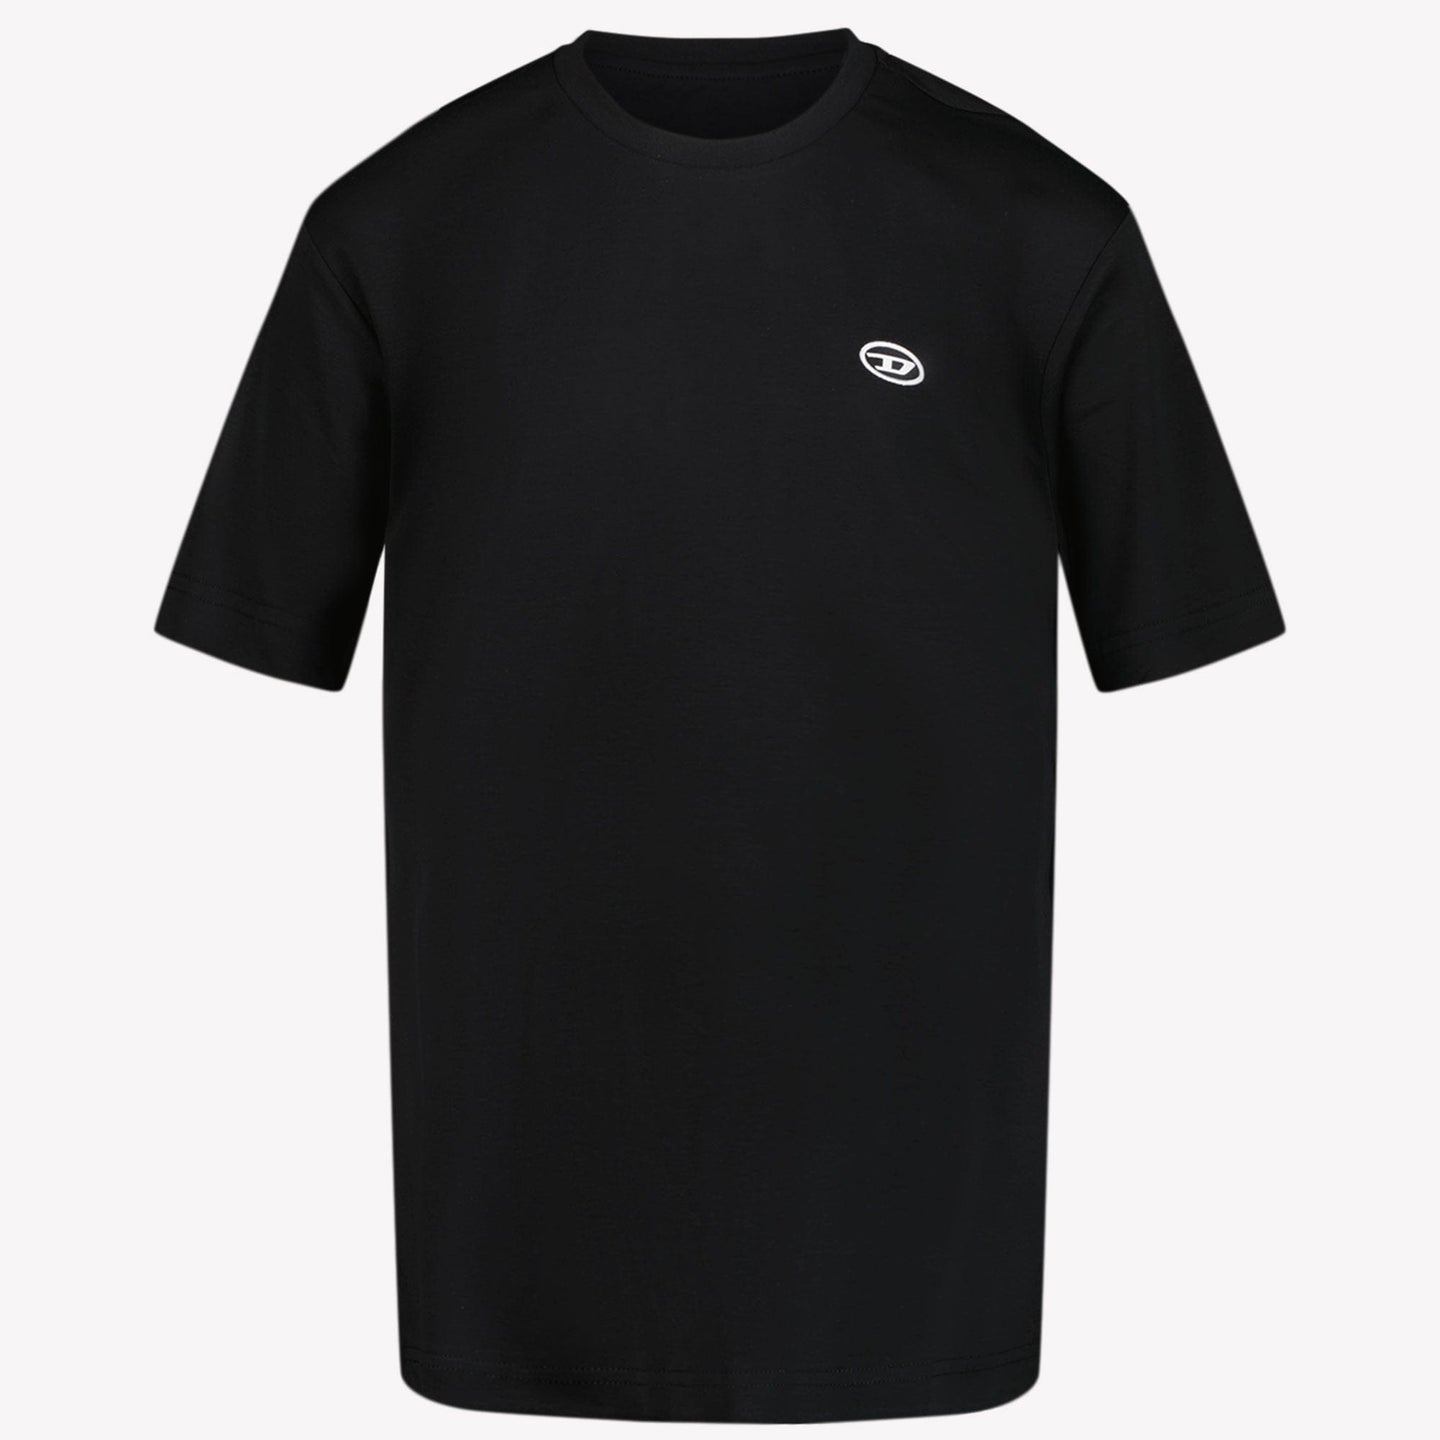 Diesel Jongens T-shirt Zwart 4Y